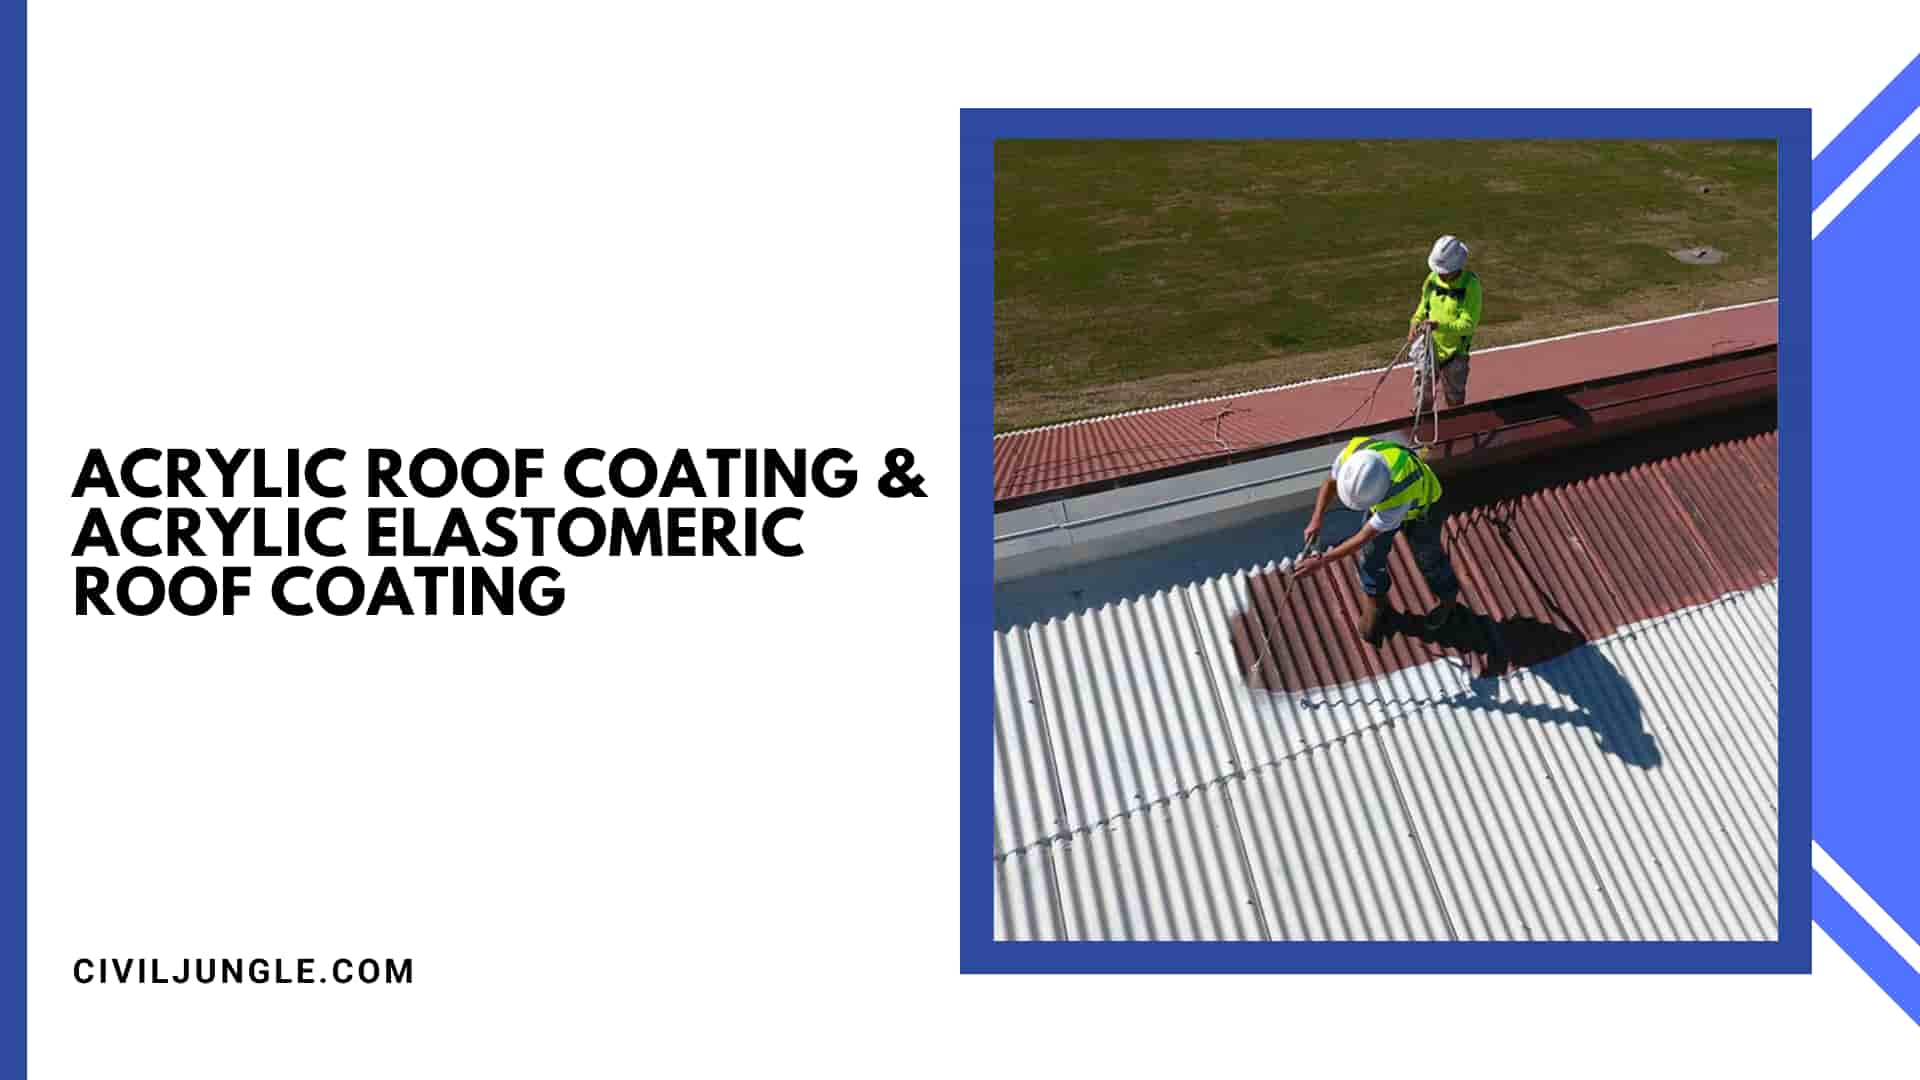 Acrylic Roof Coating & Acrylic Elastomeric Roof Coating